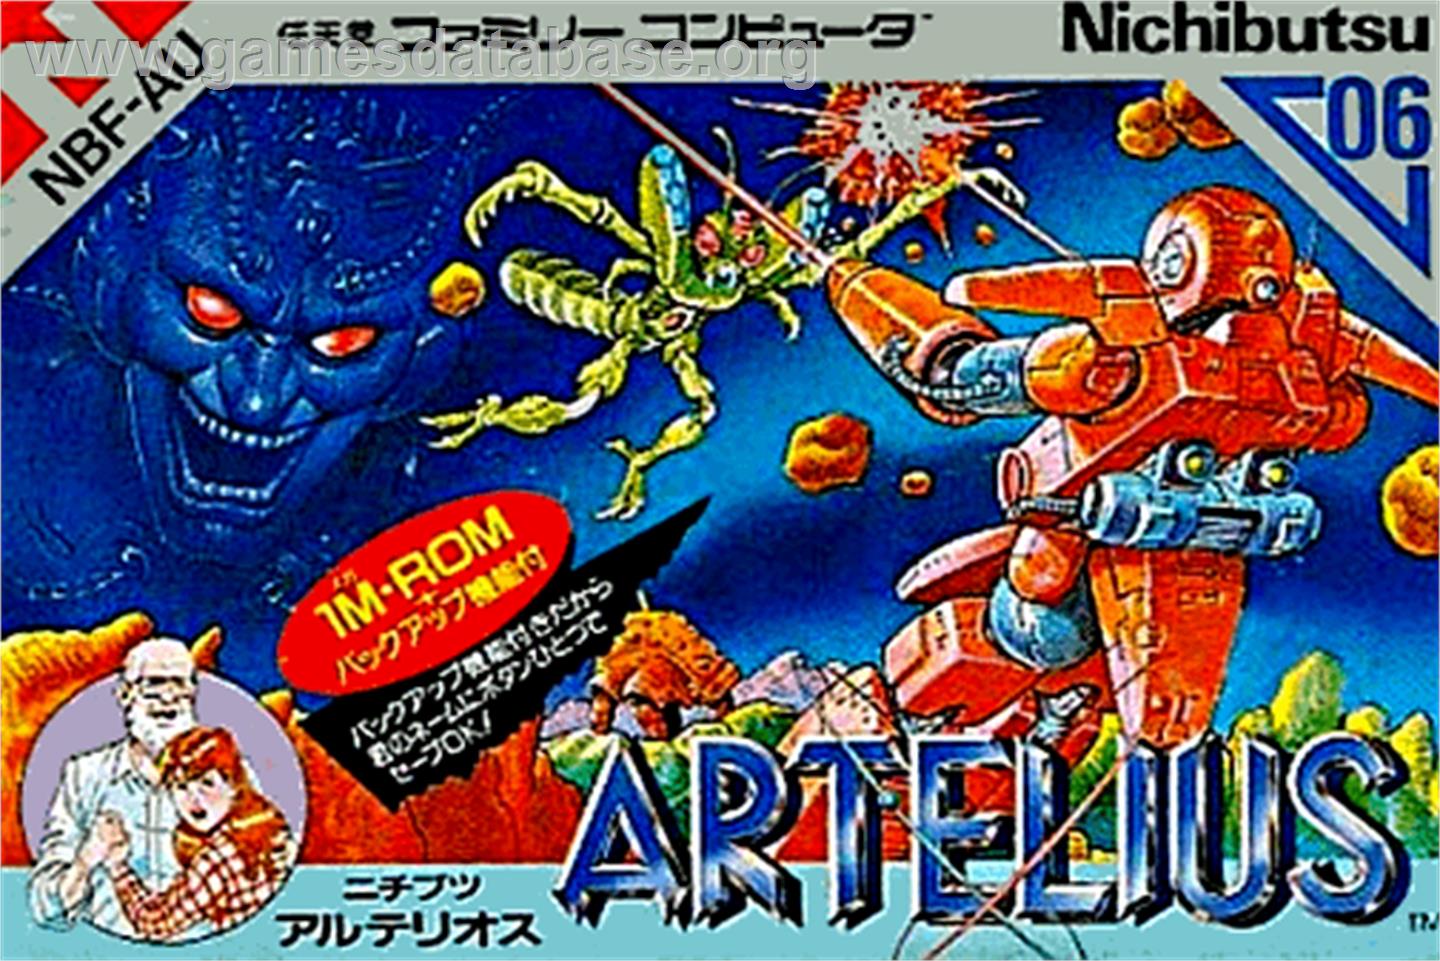 Artelius - Nintendo NES - Artwork - Box